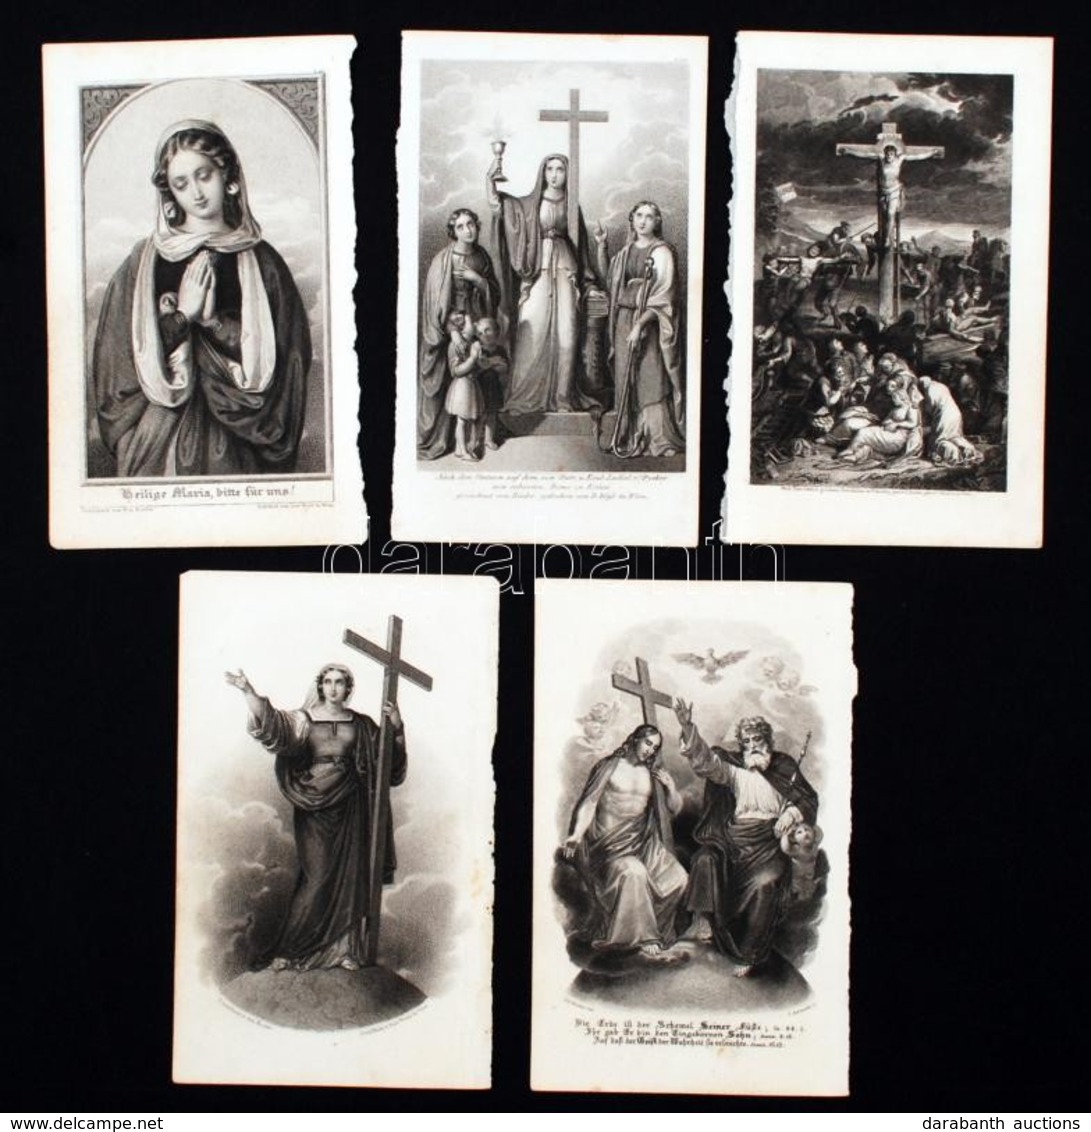 Litográfiák: Szent Képek, Bibliai Jelenetek, 5db, 14,5xc9cm - Stiche & Gravuren